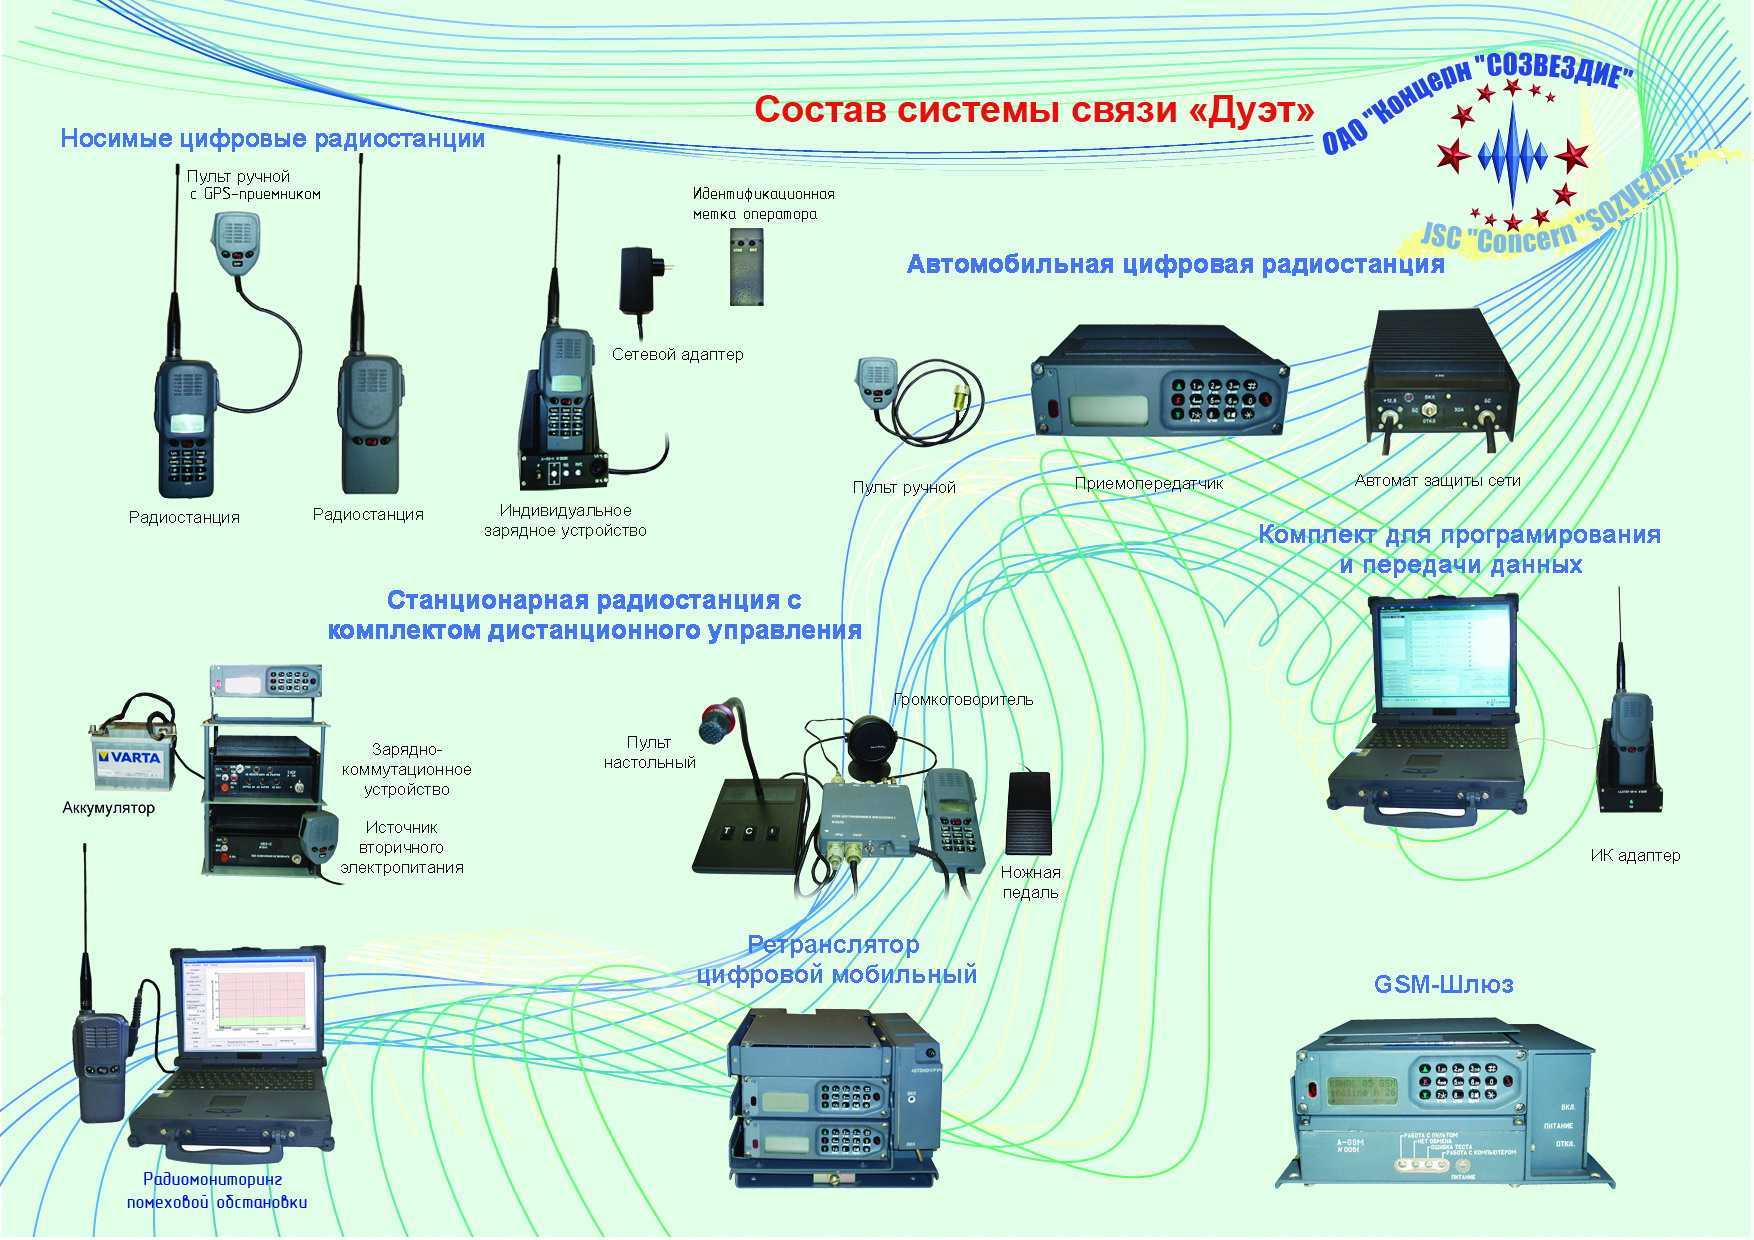 Интеграция сетей радиосвязи специального назначения в единое информационное пространство на основе применения средств радиосвязи шестого поколения